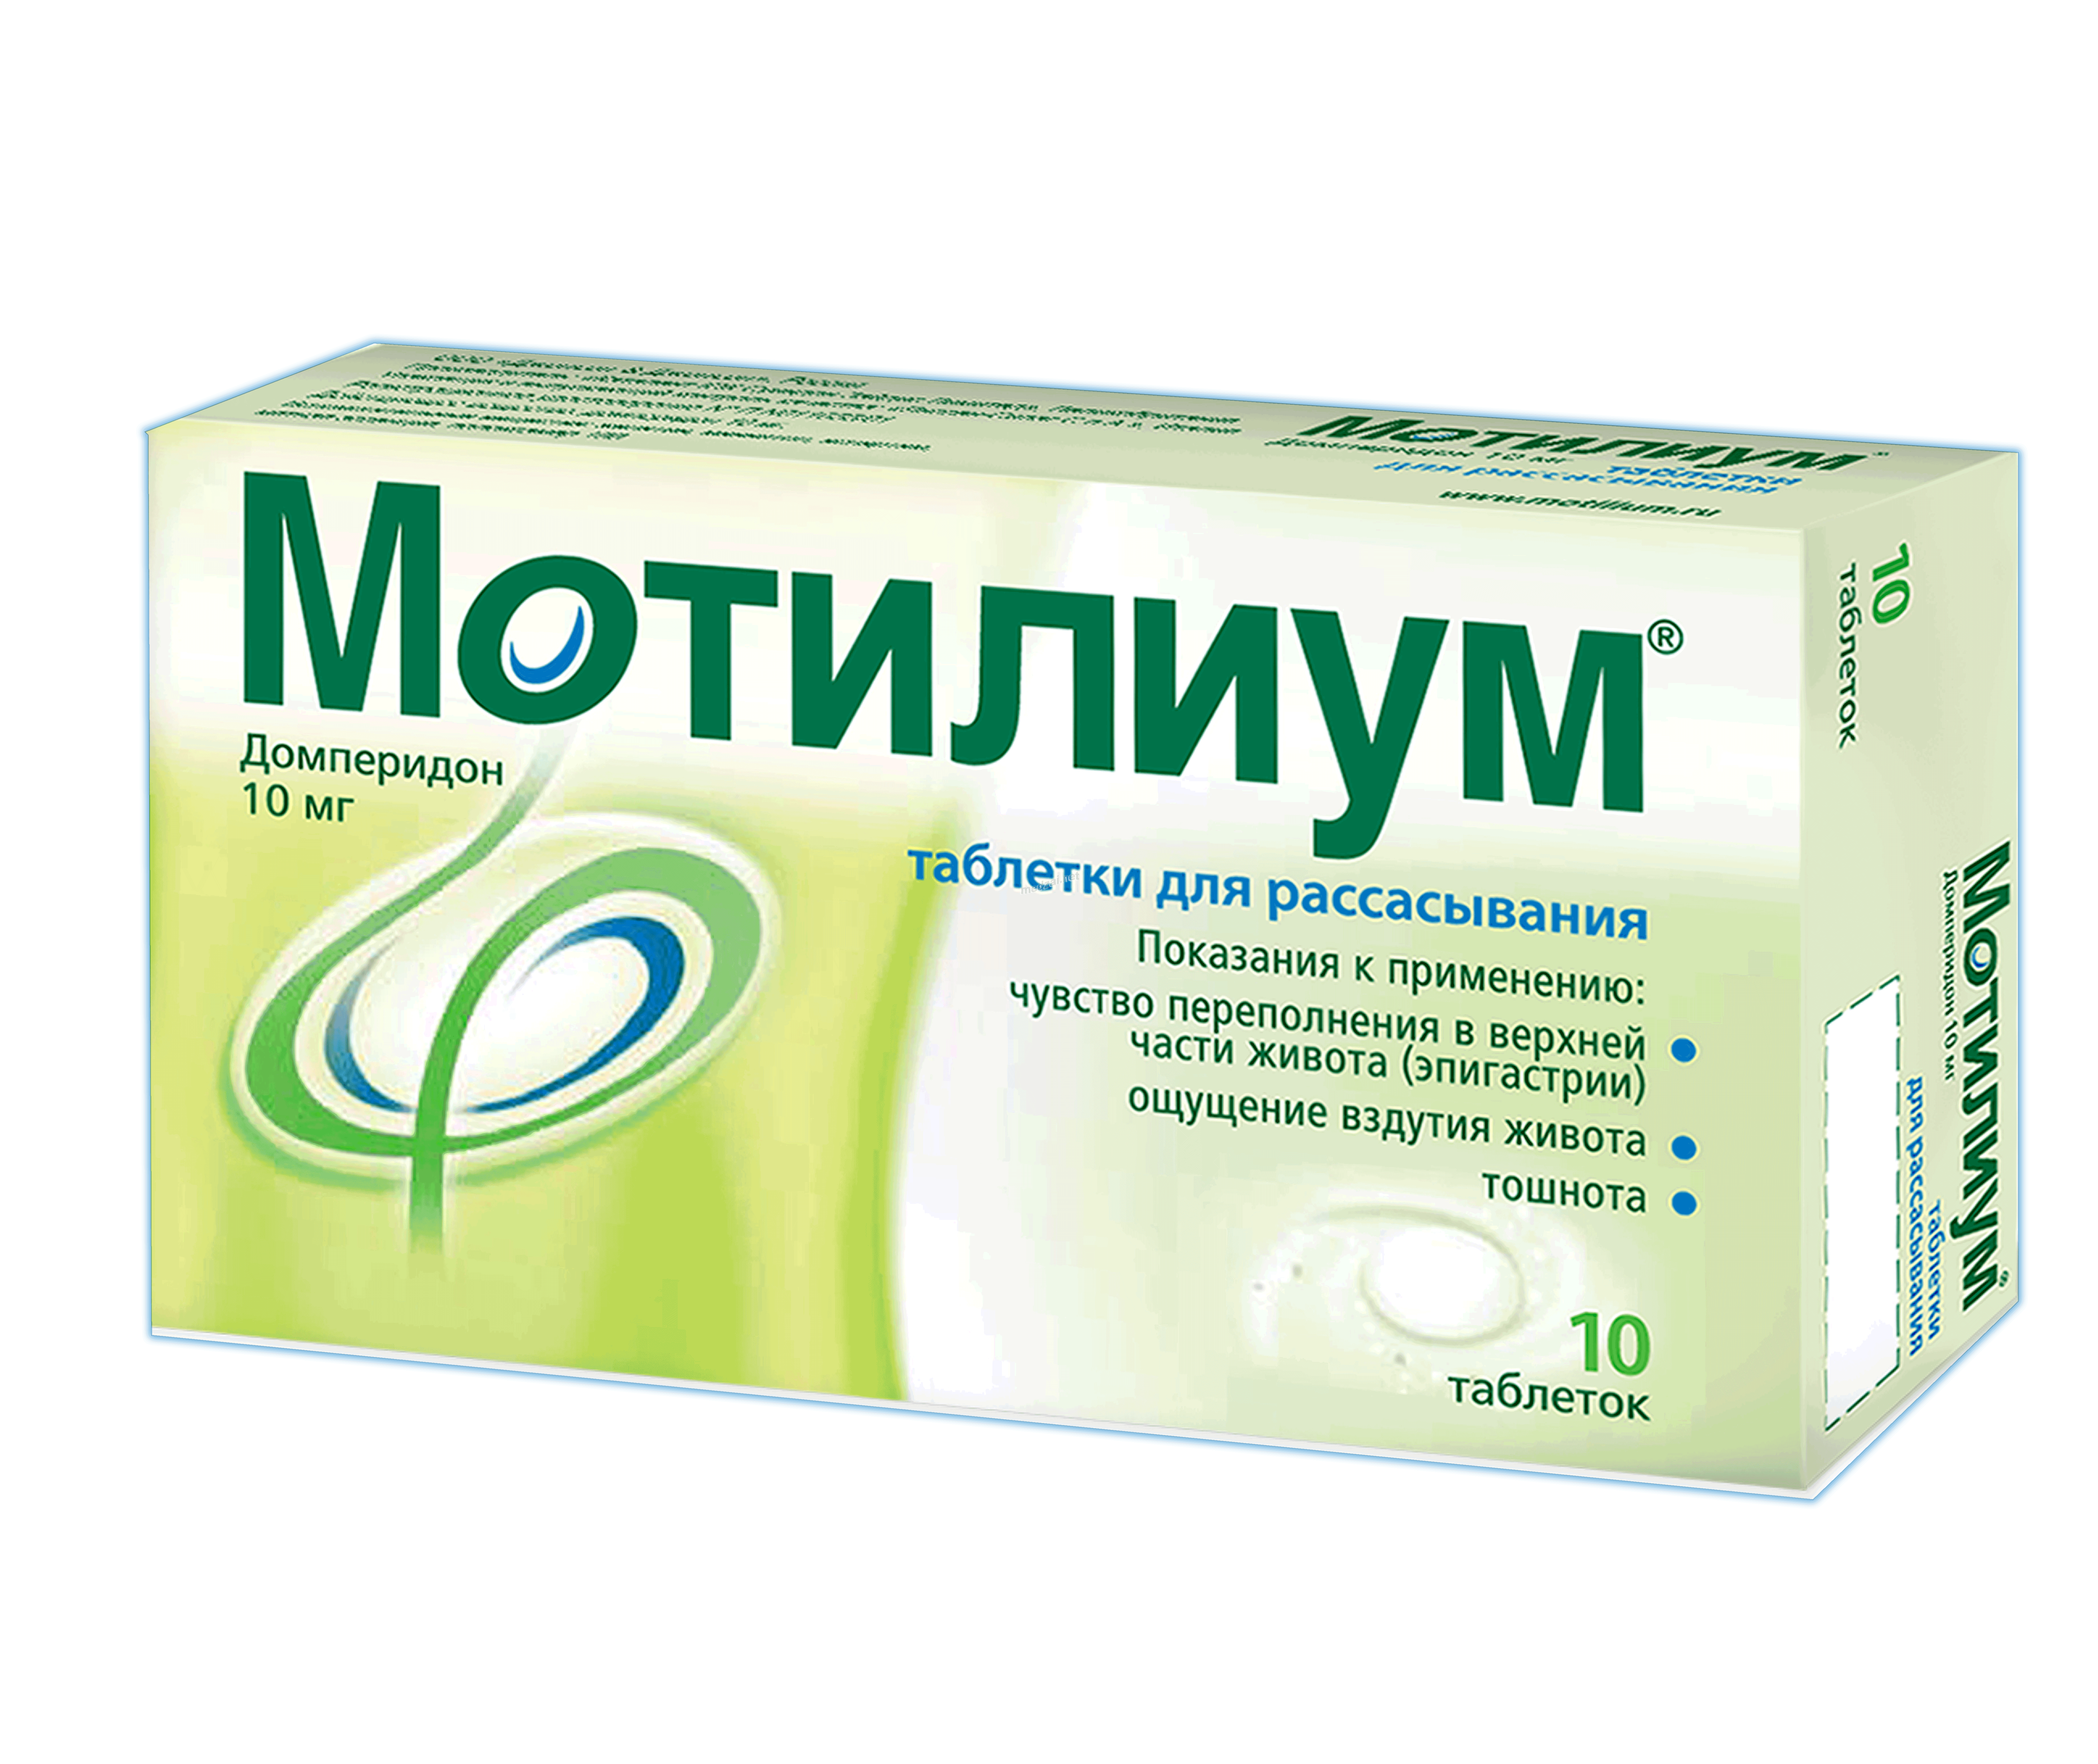 МотилиумЭкспресс таблетки для рассасывания; ООО "Джонсон & Джонсон" (Россия)